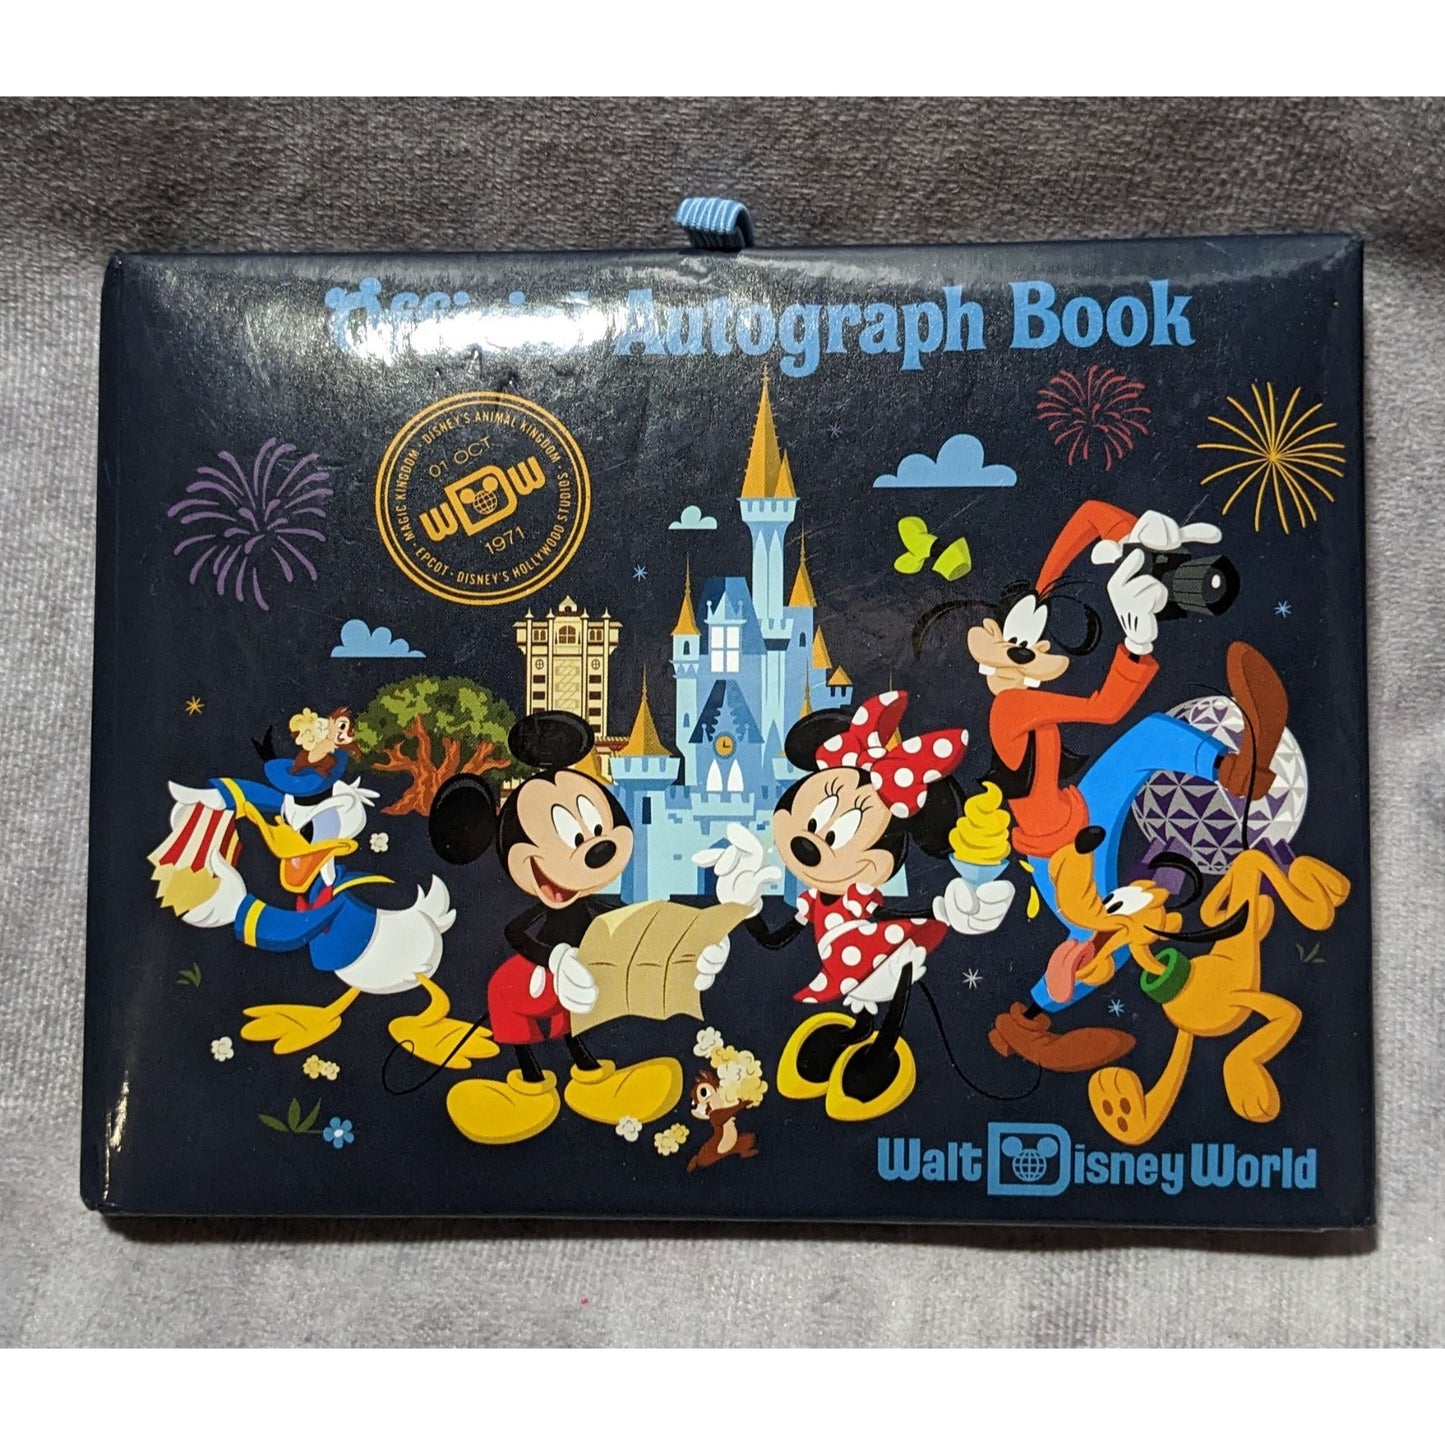 Walt Disney World Official Autograph Book